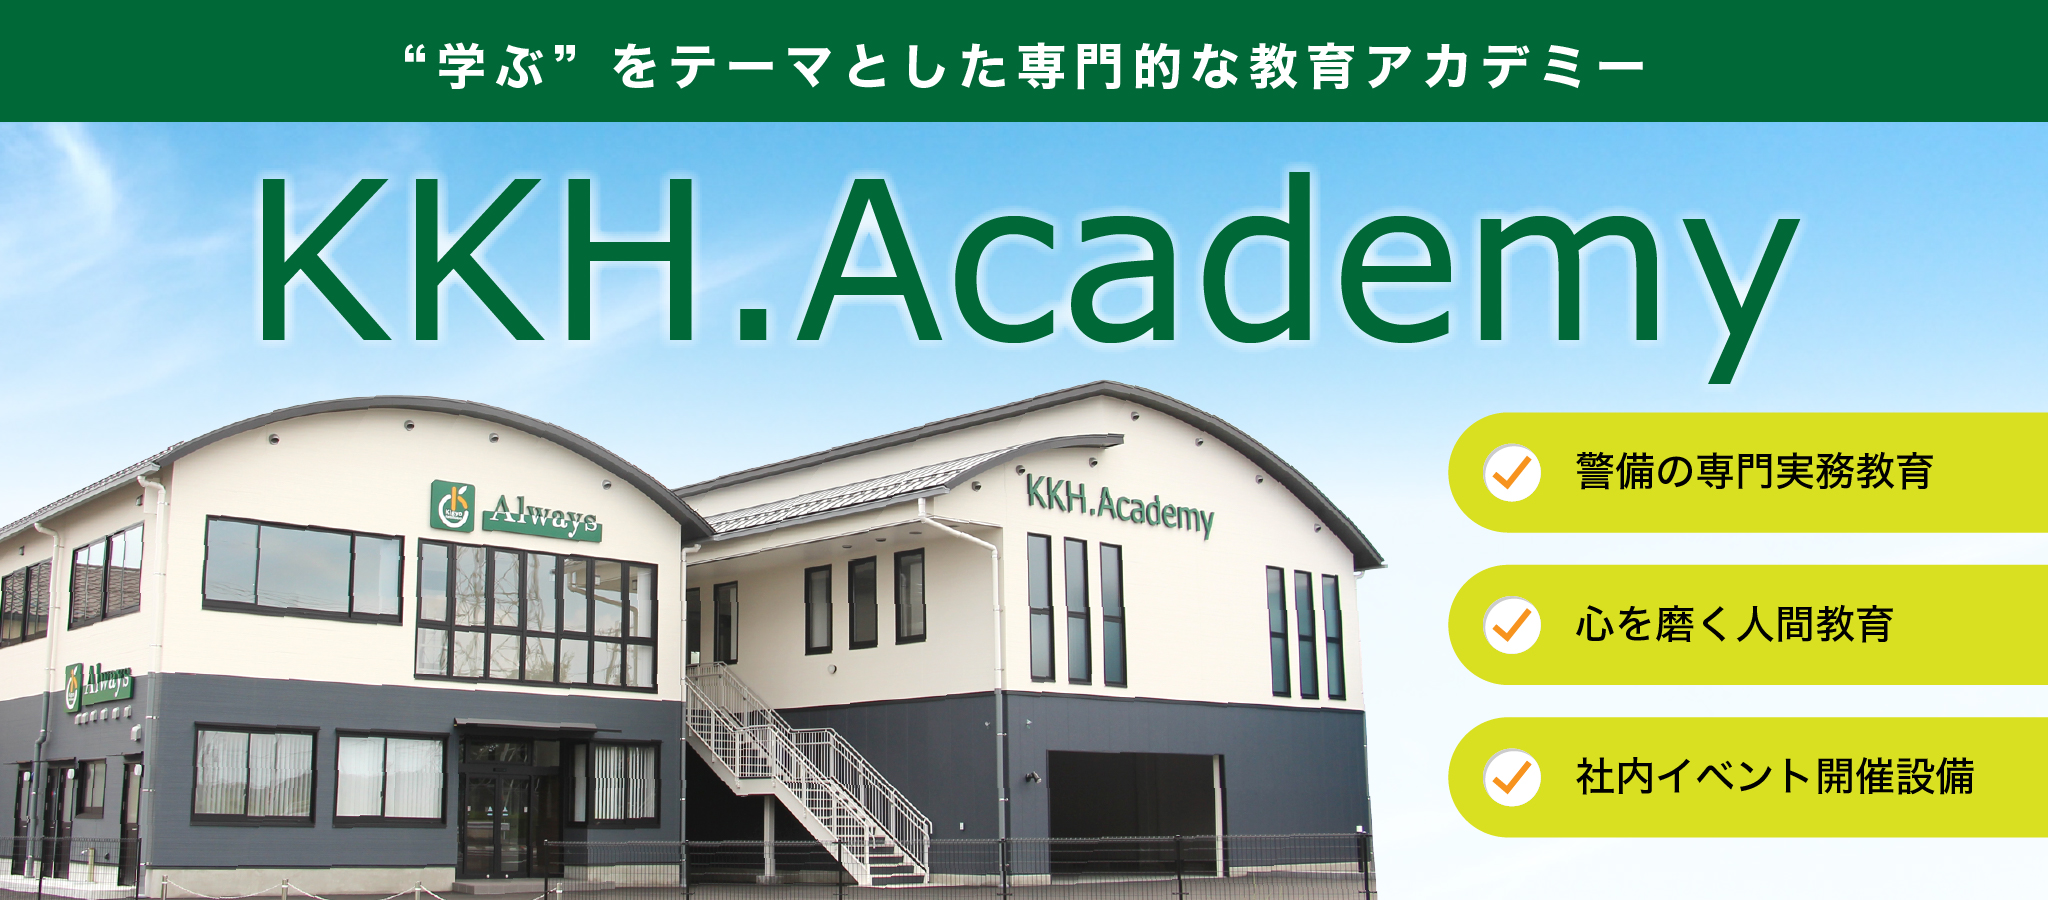 学ぶをテーマとした専門的なアカデミー KKH.Academy